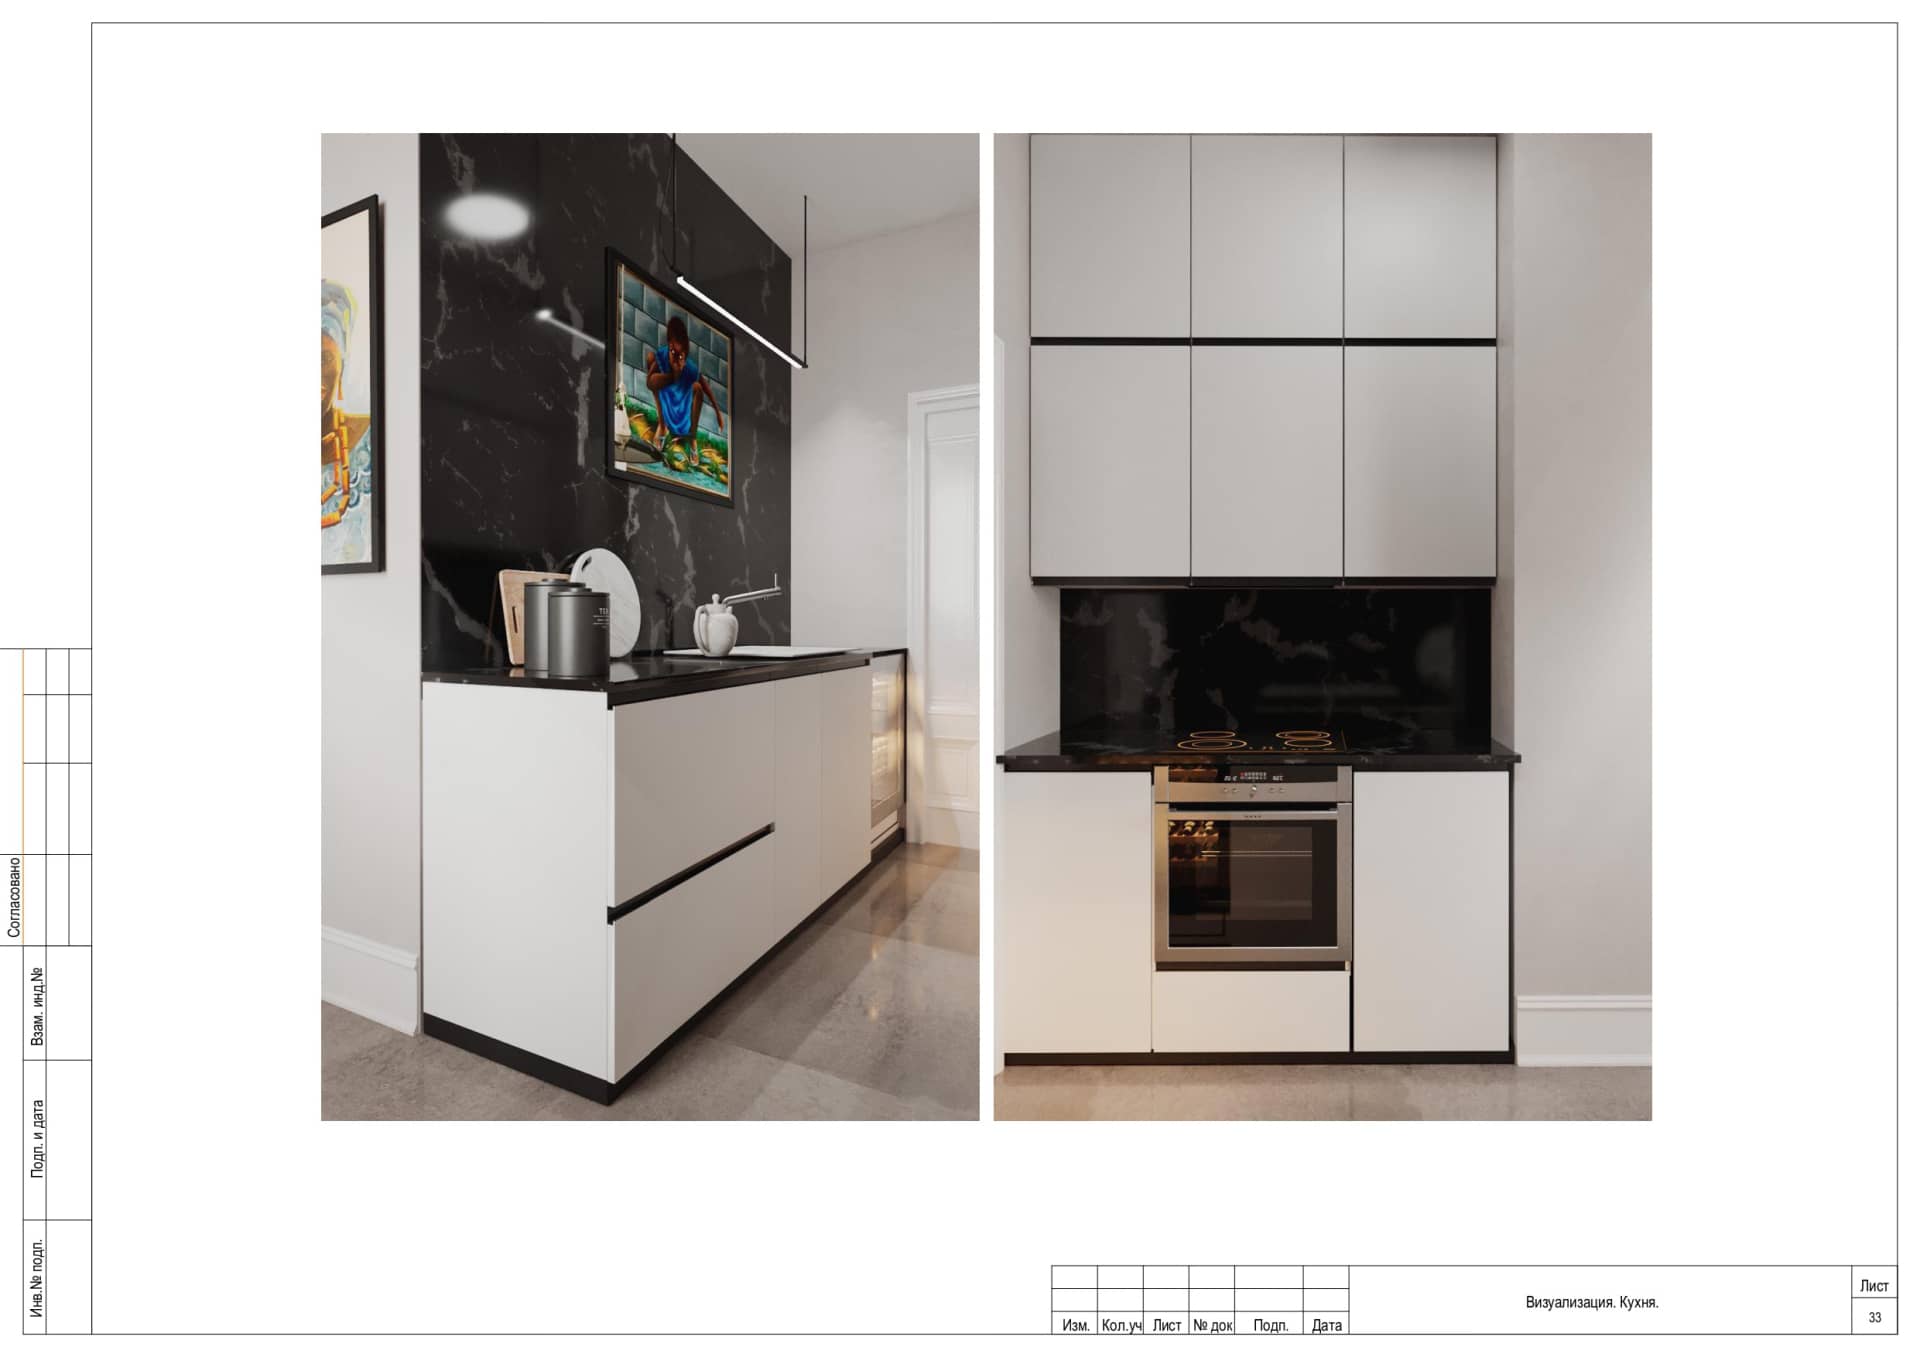 Визуализация кухня, квартира 89 м²